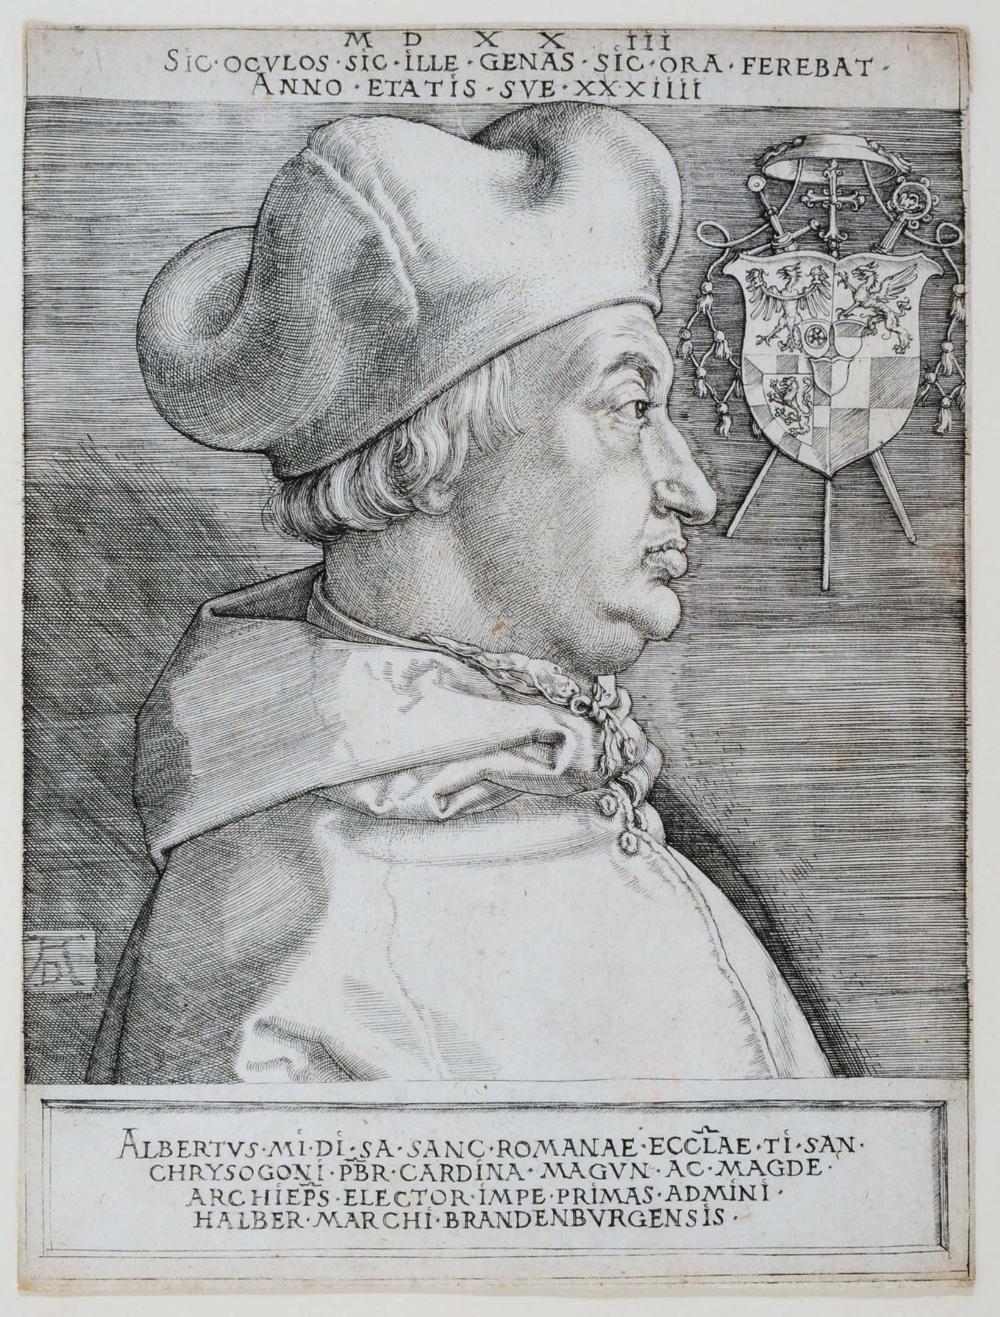 Albrecht Durer 'Cardinal Albrecht of Brandenburg - The Great Cardinal' (B103), engraving, 17 x 12.